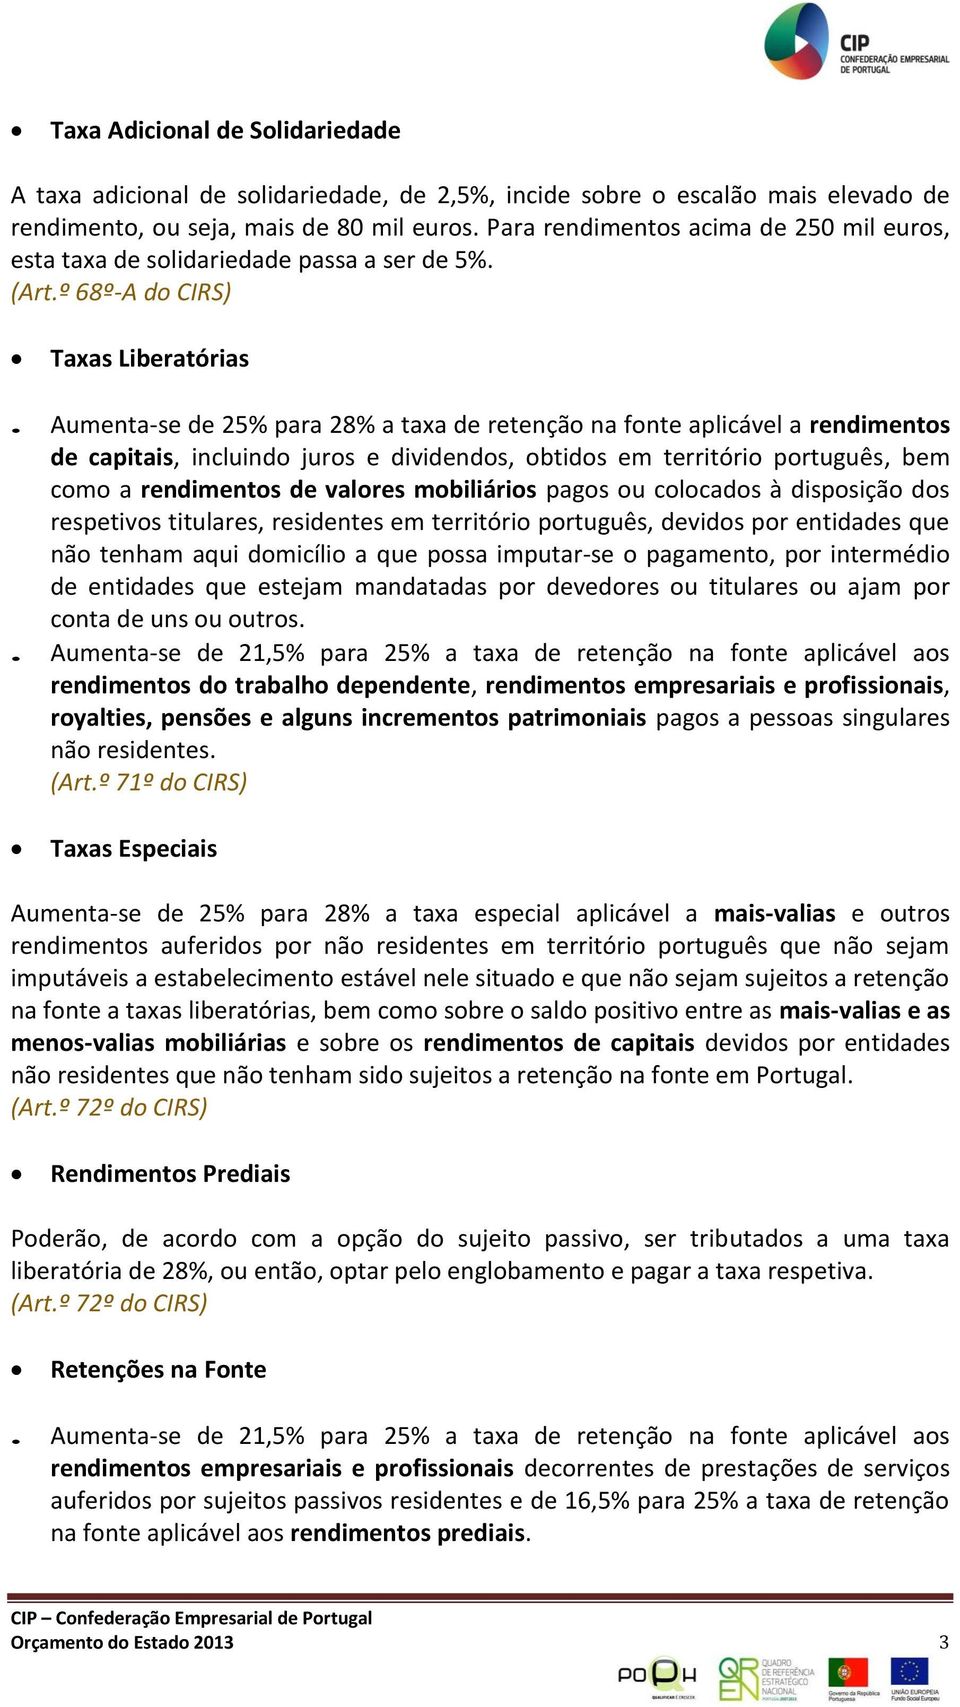 Aumenta-se de 25% para 28% a taxa de retenção na fonte aplicável a rendimentos de capitais, incluindo juros e dividendos, obtidos em território português, bem como a rendimentos de valores